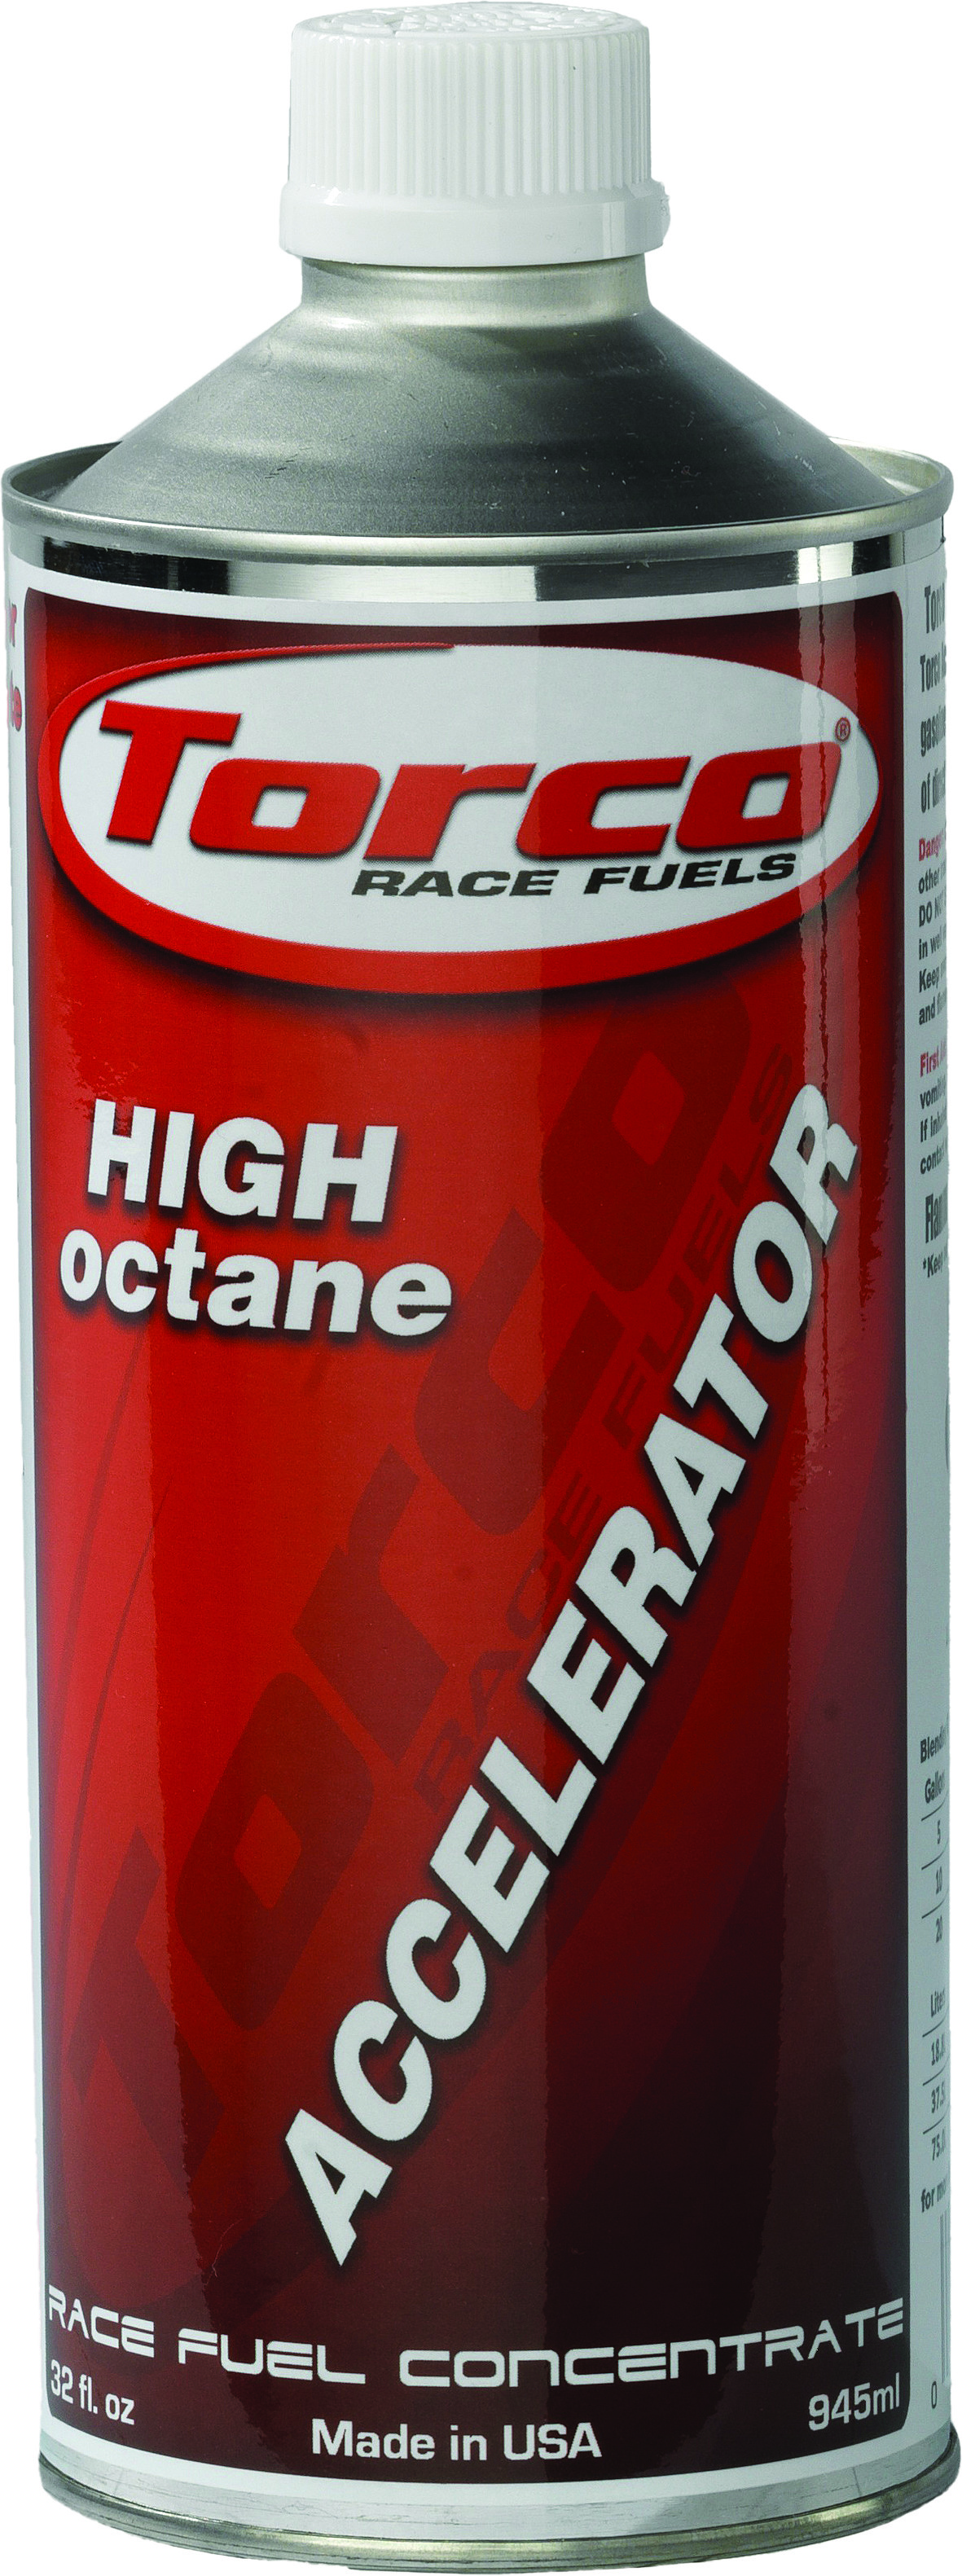 Torco. Гоночное топливо. High Octane Racing fuel сувенир. High Octane Racing fuel стеклянная башня. High octane